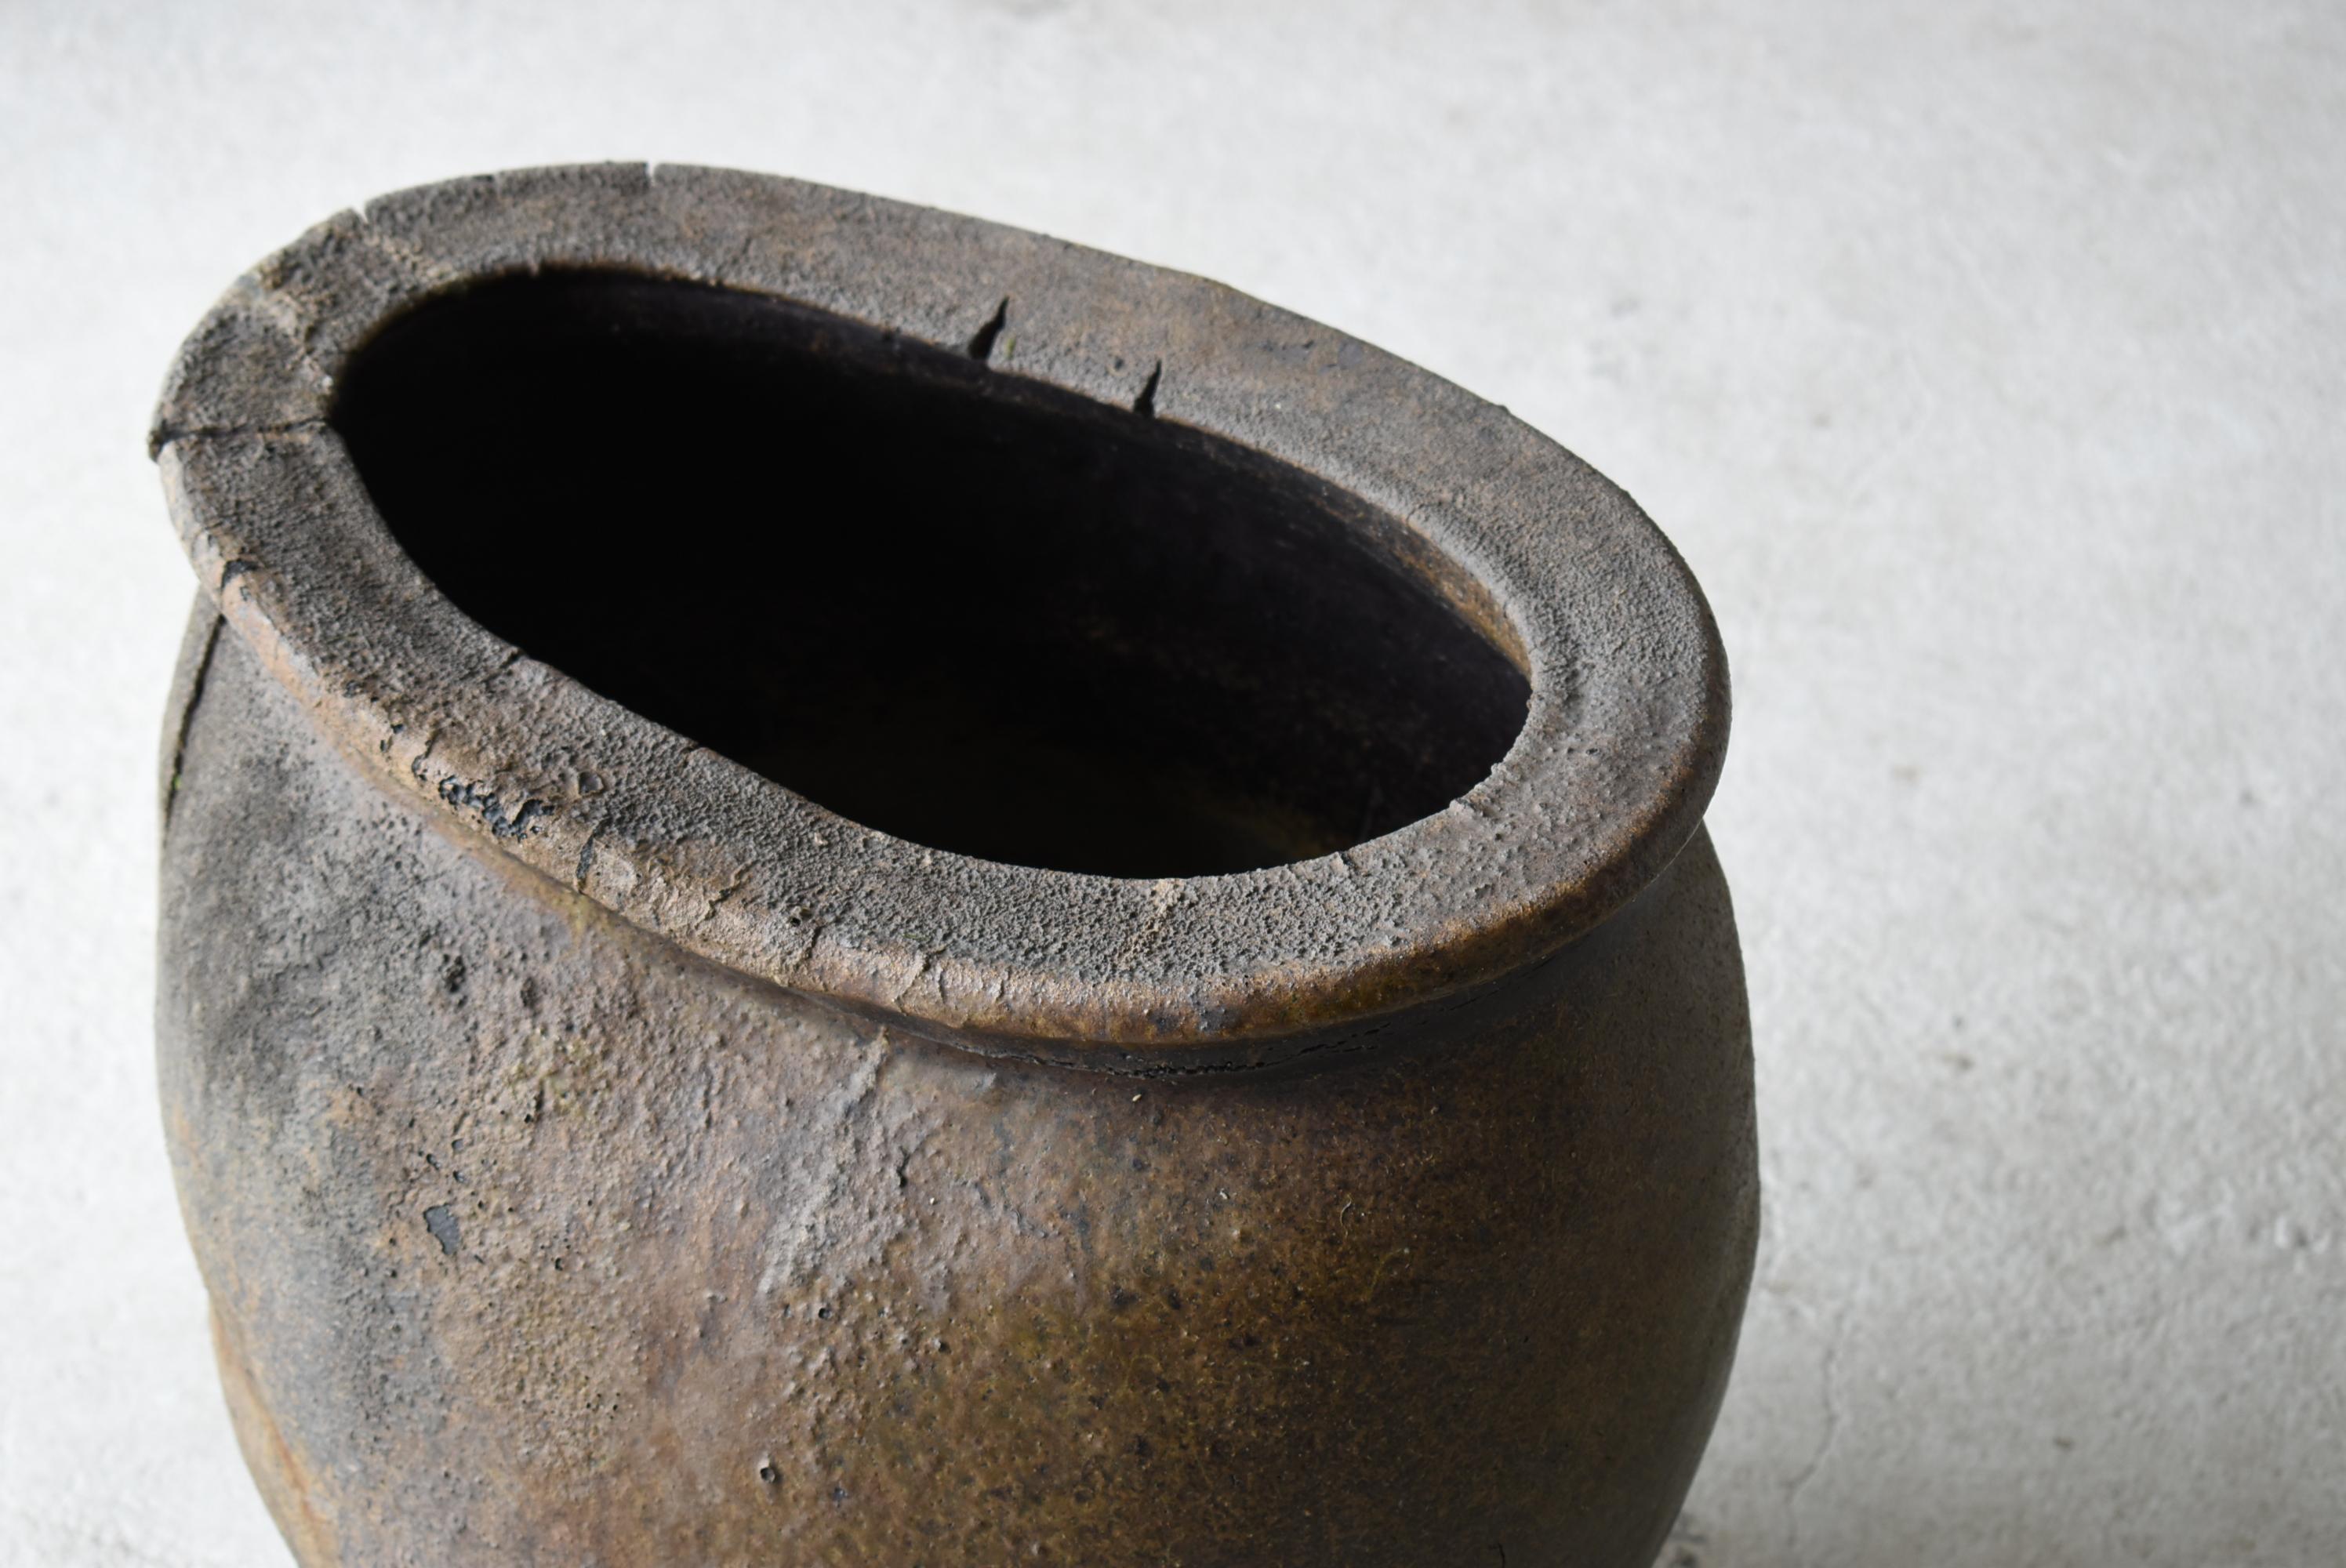 Edo Extremely Rare Japanese Antique Pottery 1600s-1700s/Tsubo Flower Vase Wabisabi